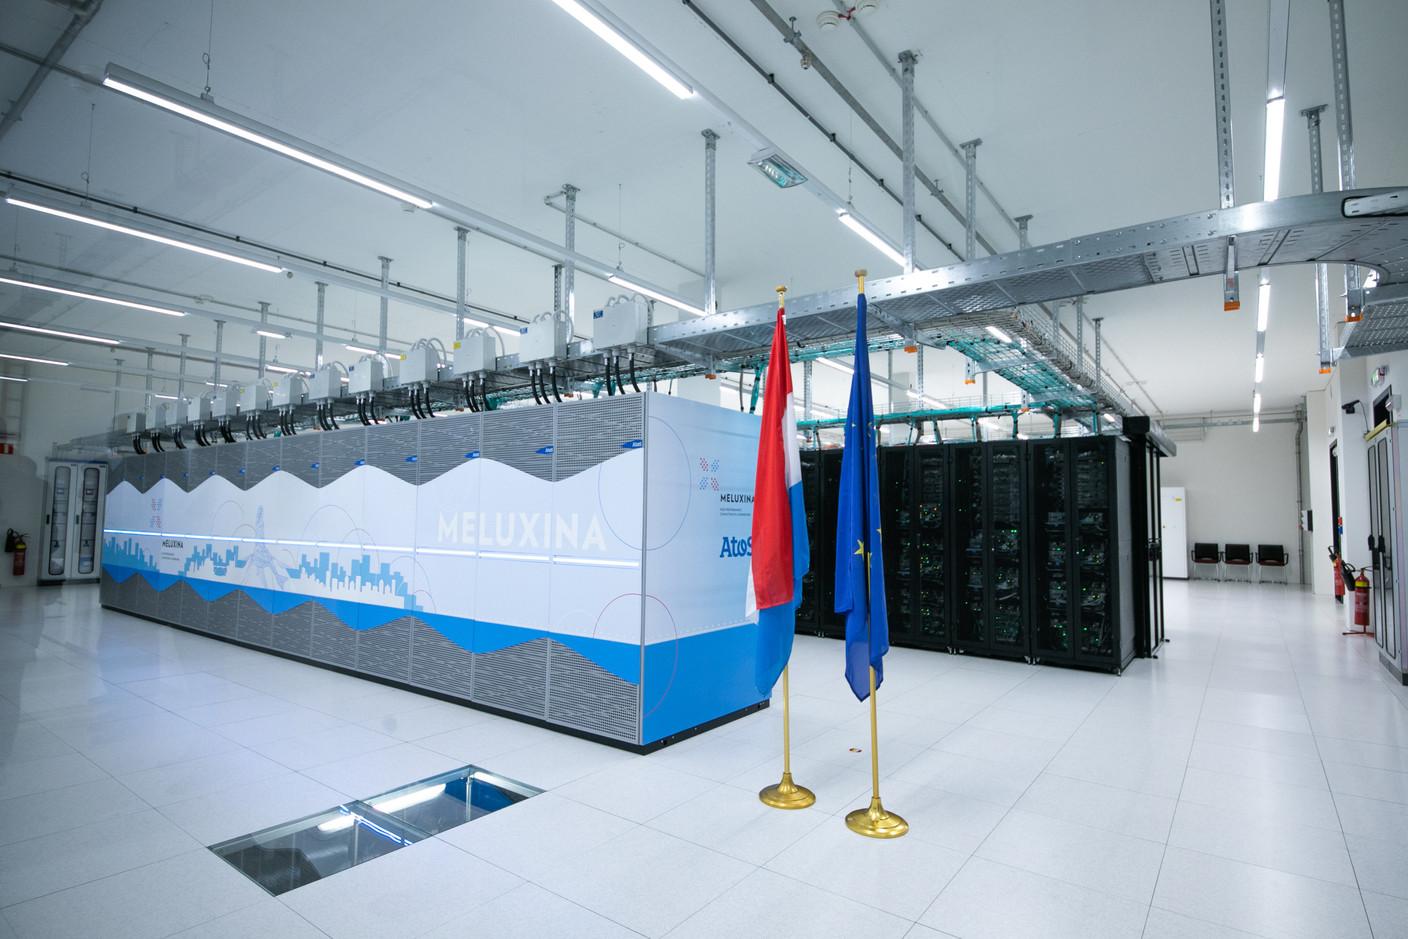 Le 7 juin, le Luxembourg marque le lancement de son supercalculateur HPC Meluxina. L’infrastructure, baptisée par le Grand-Duc, aura coûté 30,4 millions d’euros. (Photo: Matic Zorman / Maison Moderne